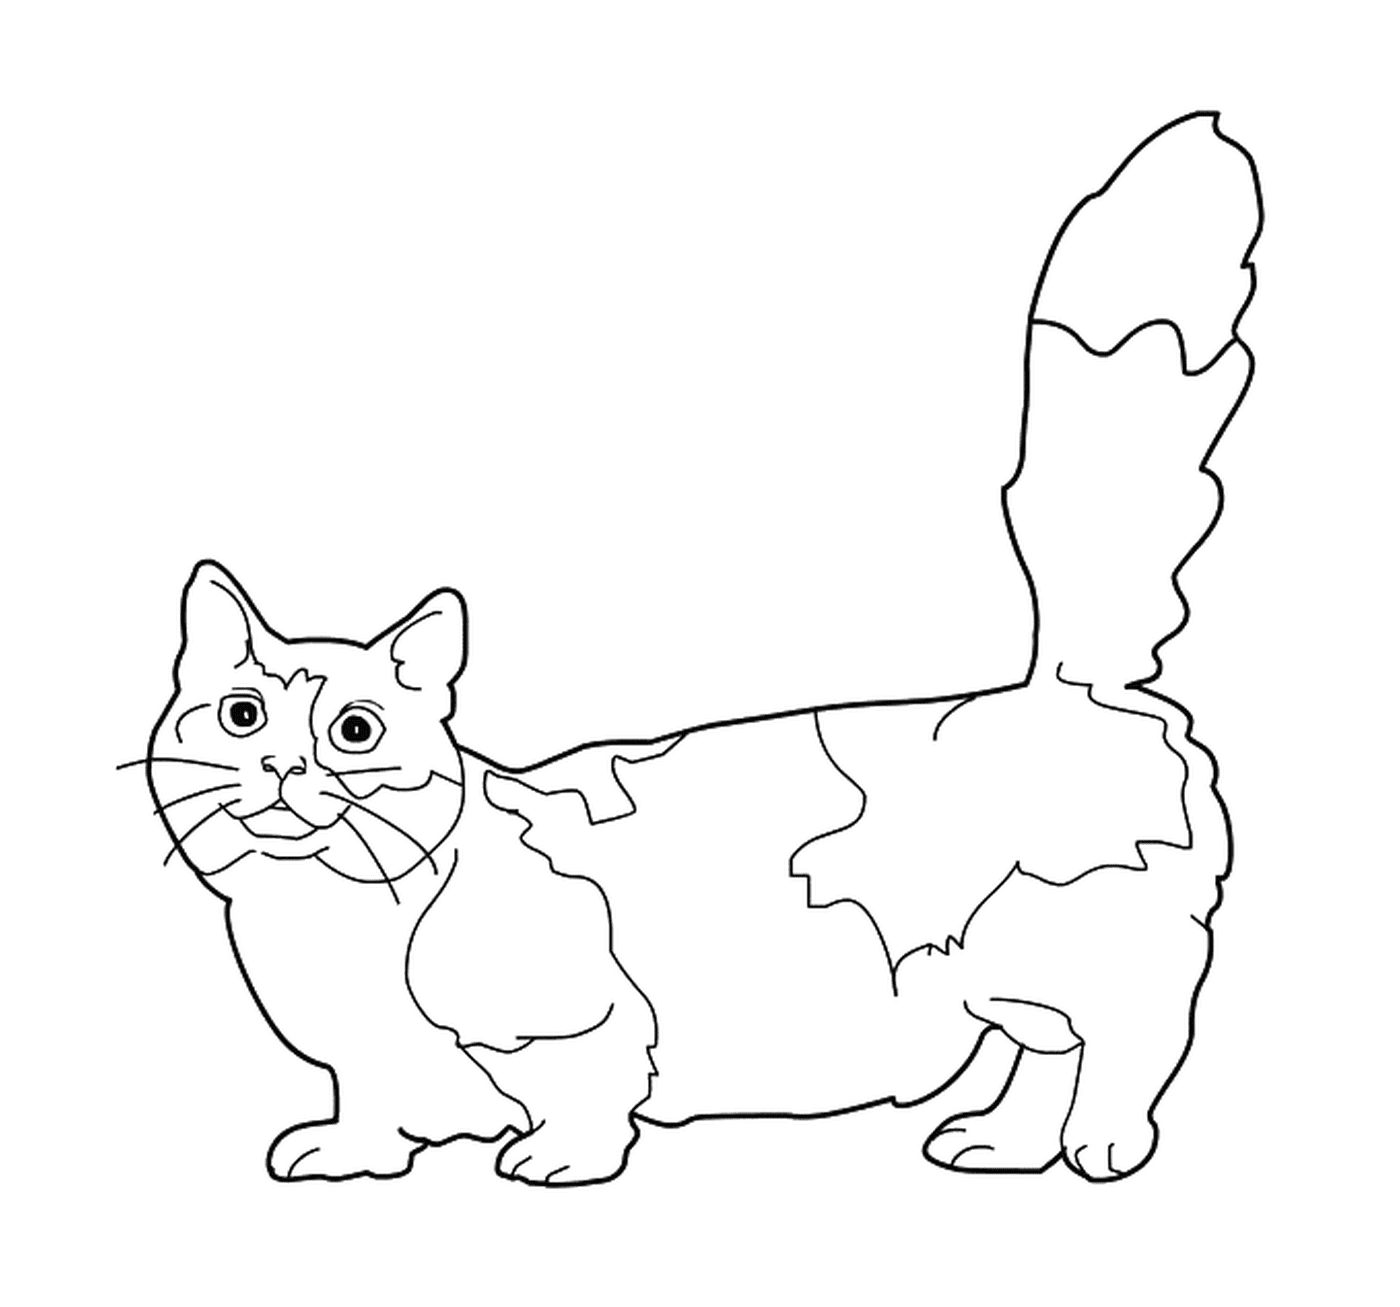   Un Munchkin, un chat avec des pattes courtes 